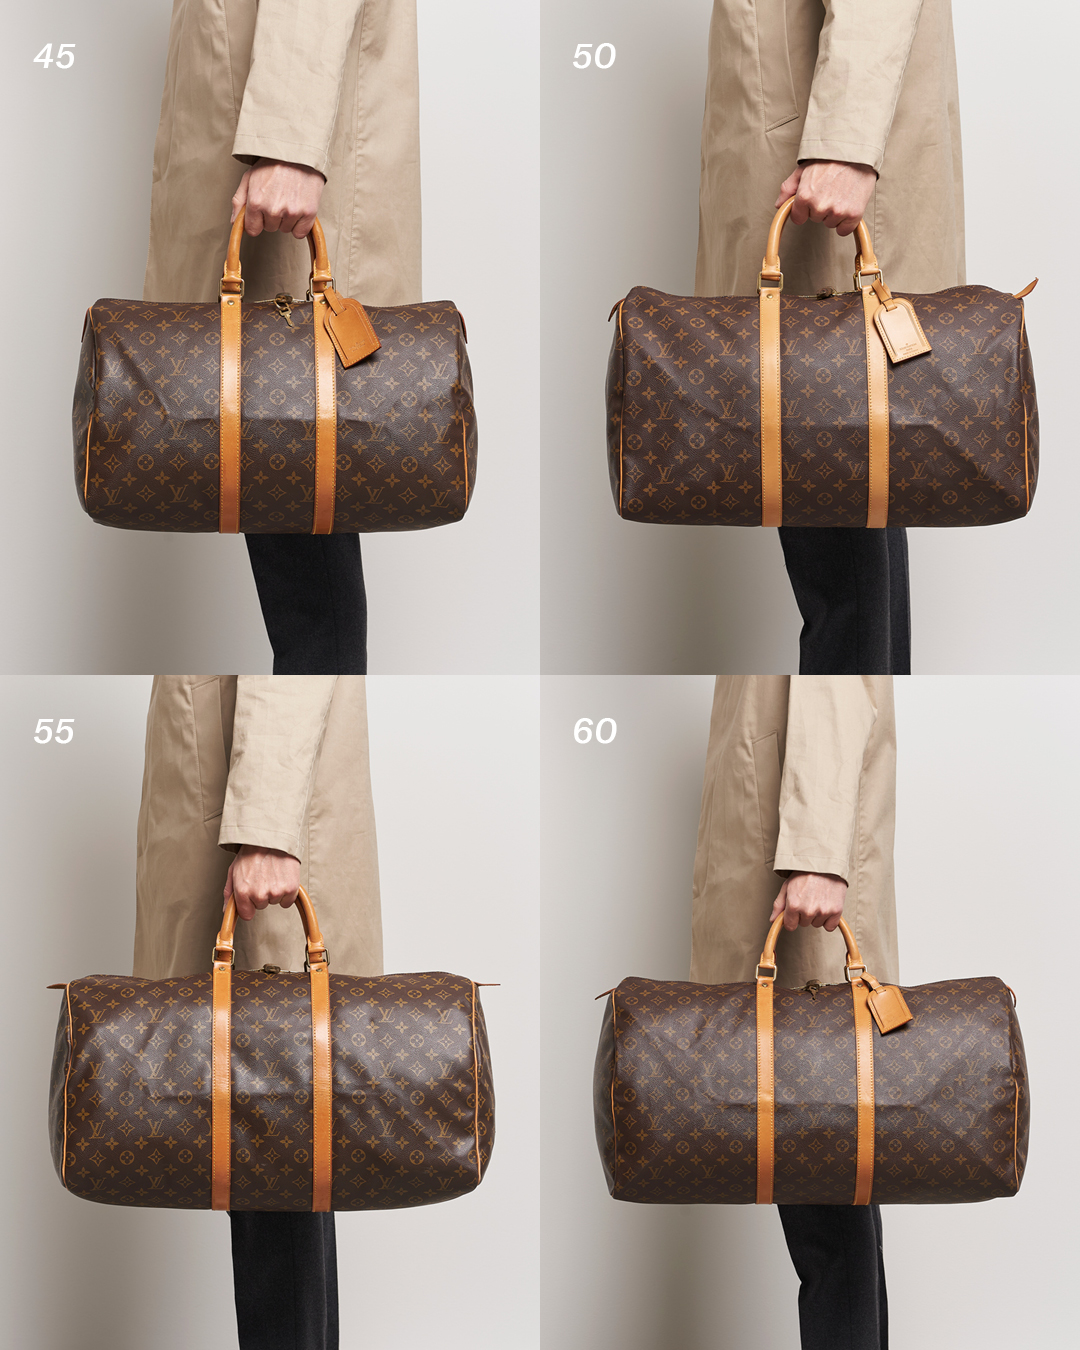 Louis Vuitton Keepall Size Comparison